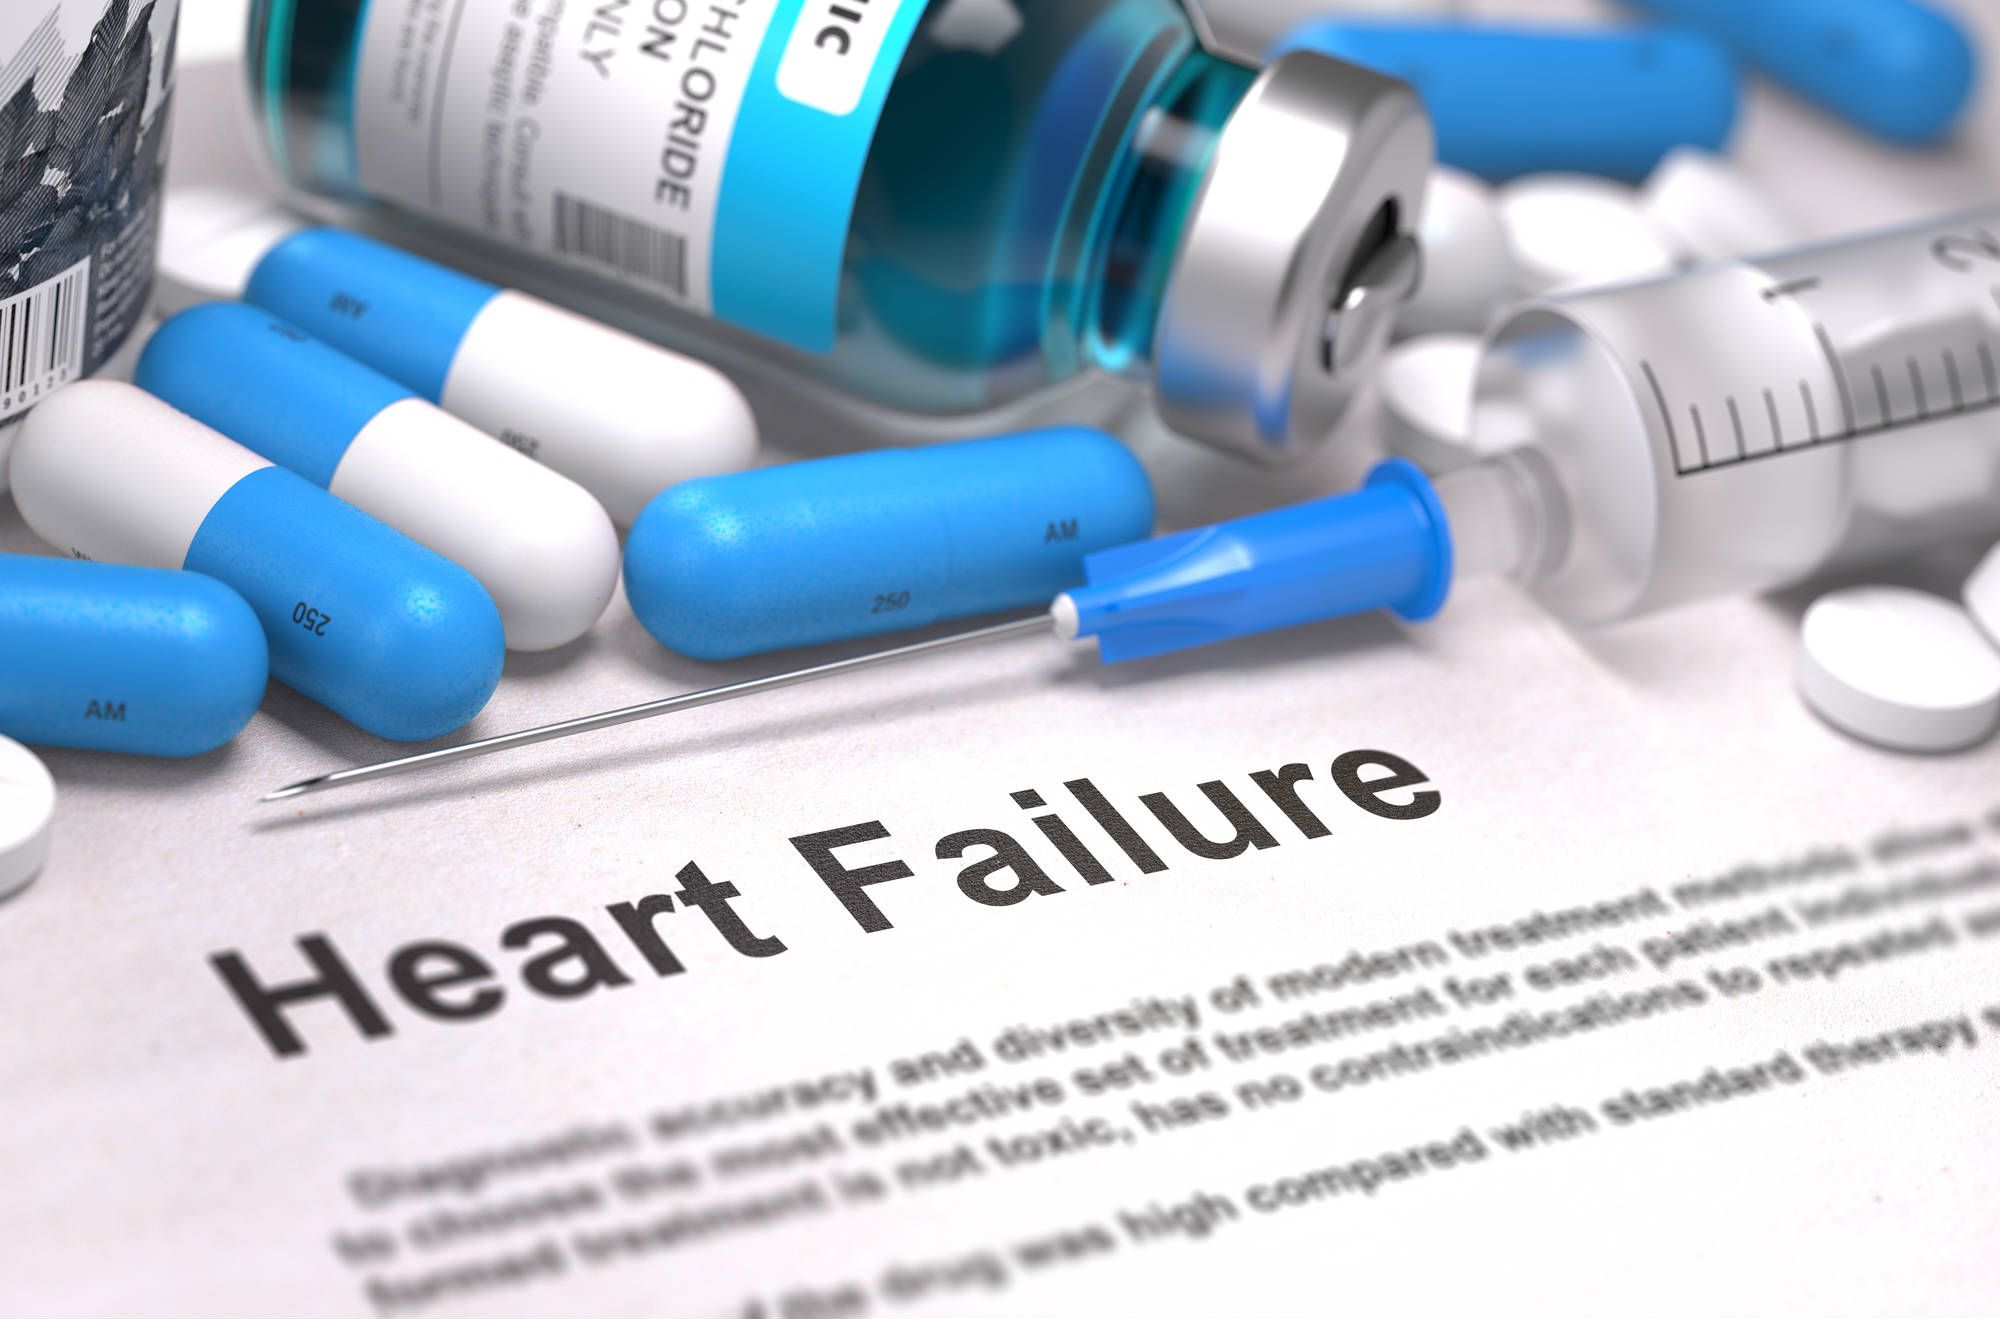 heart-failure